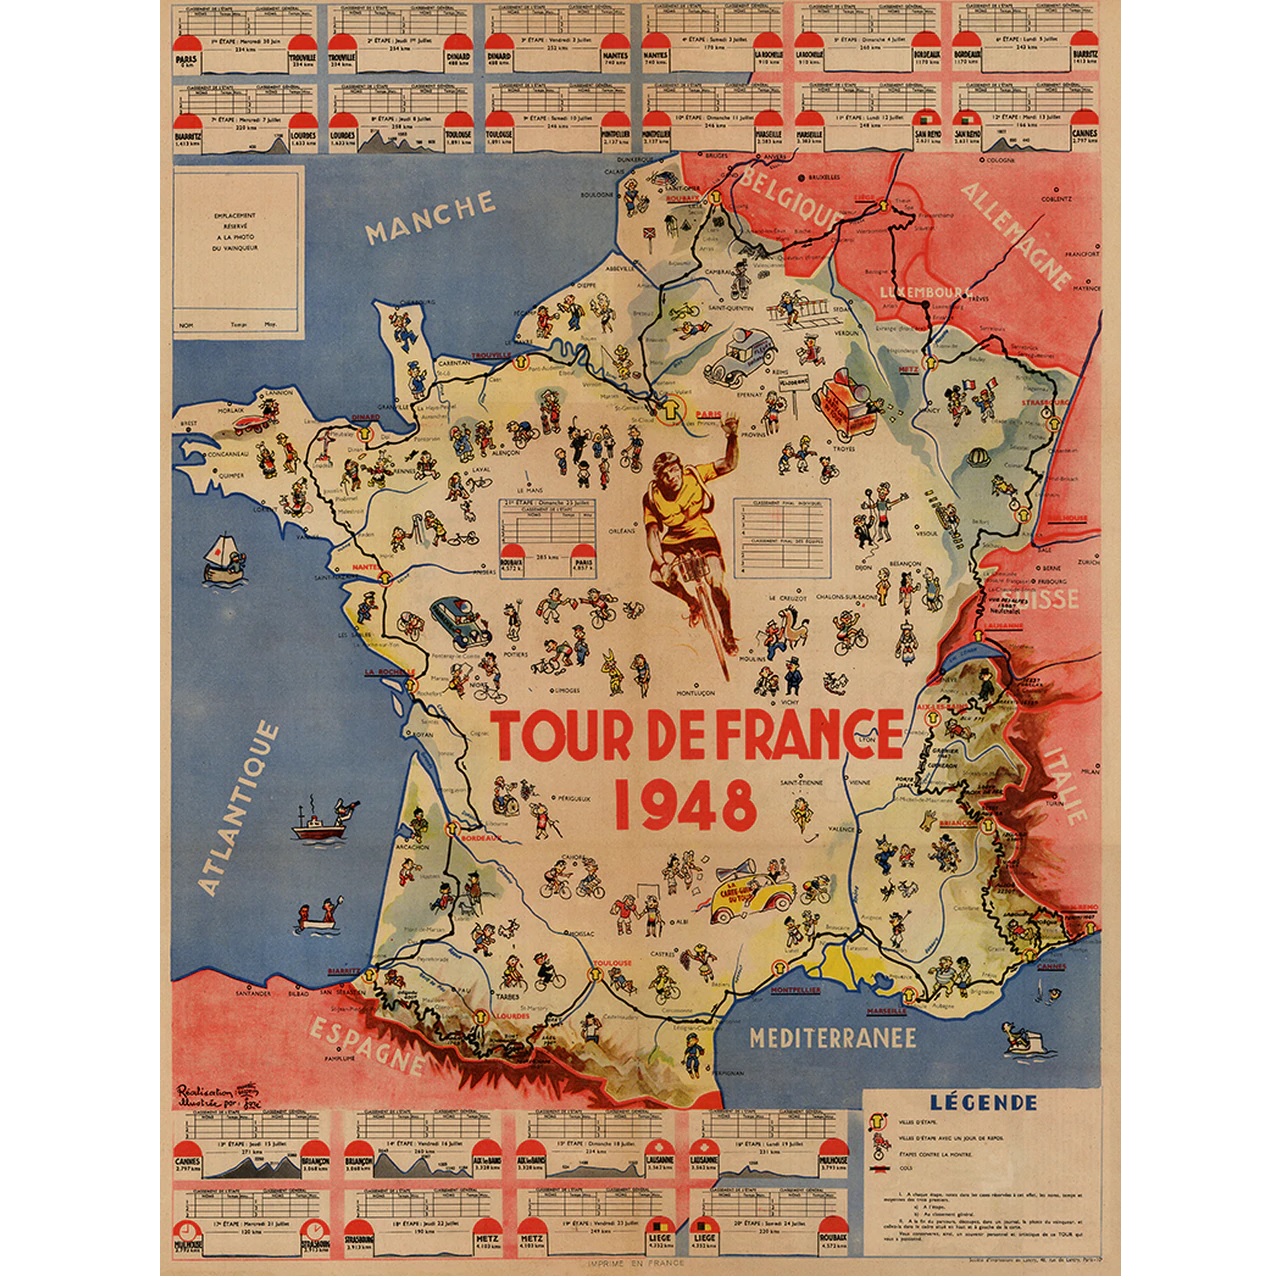 1948 Tour de France (TDF) Route Map Poster 18" x 24"